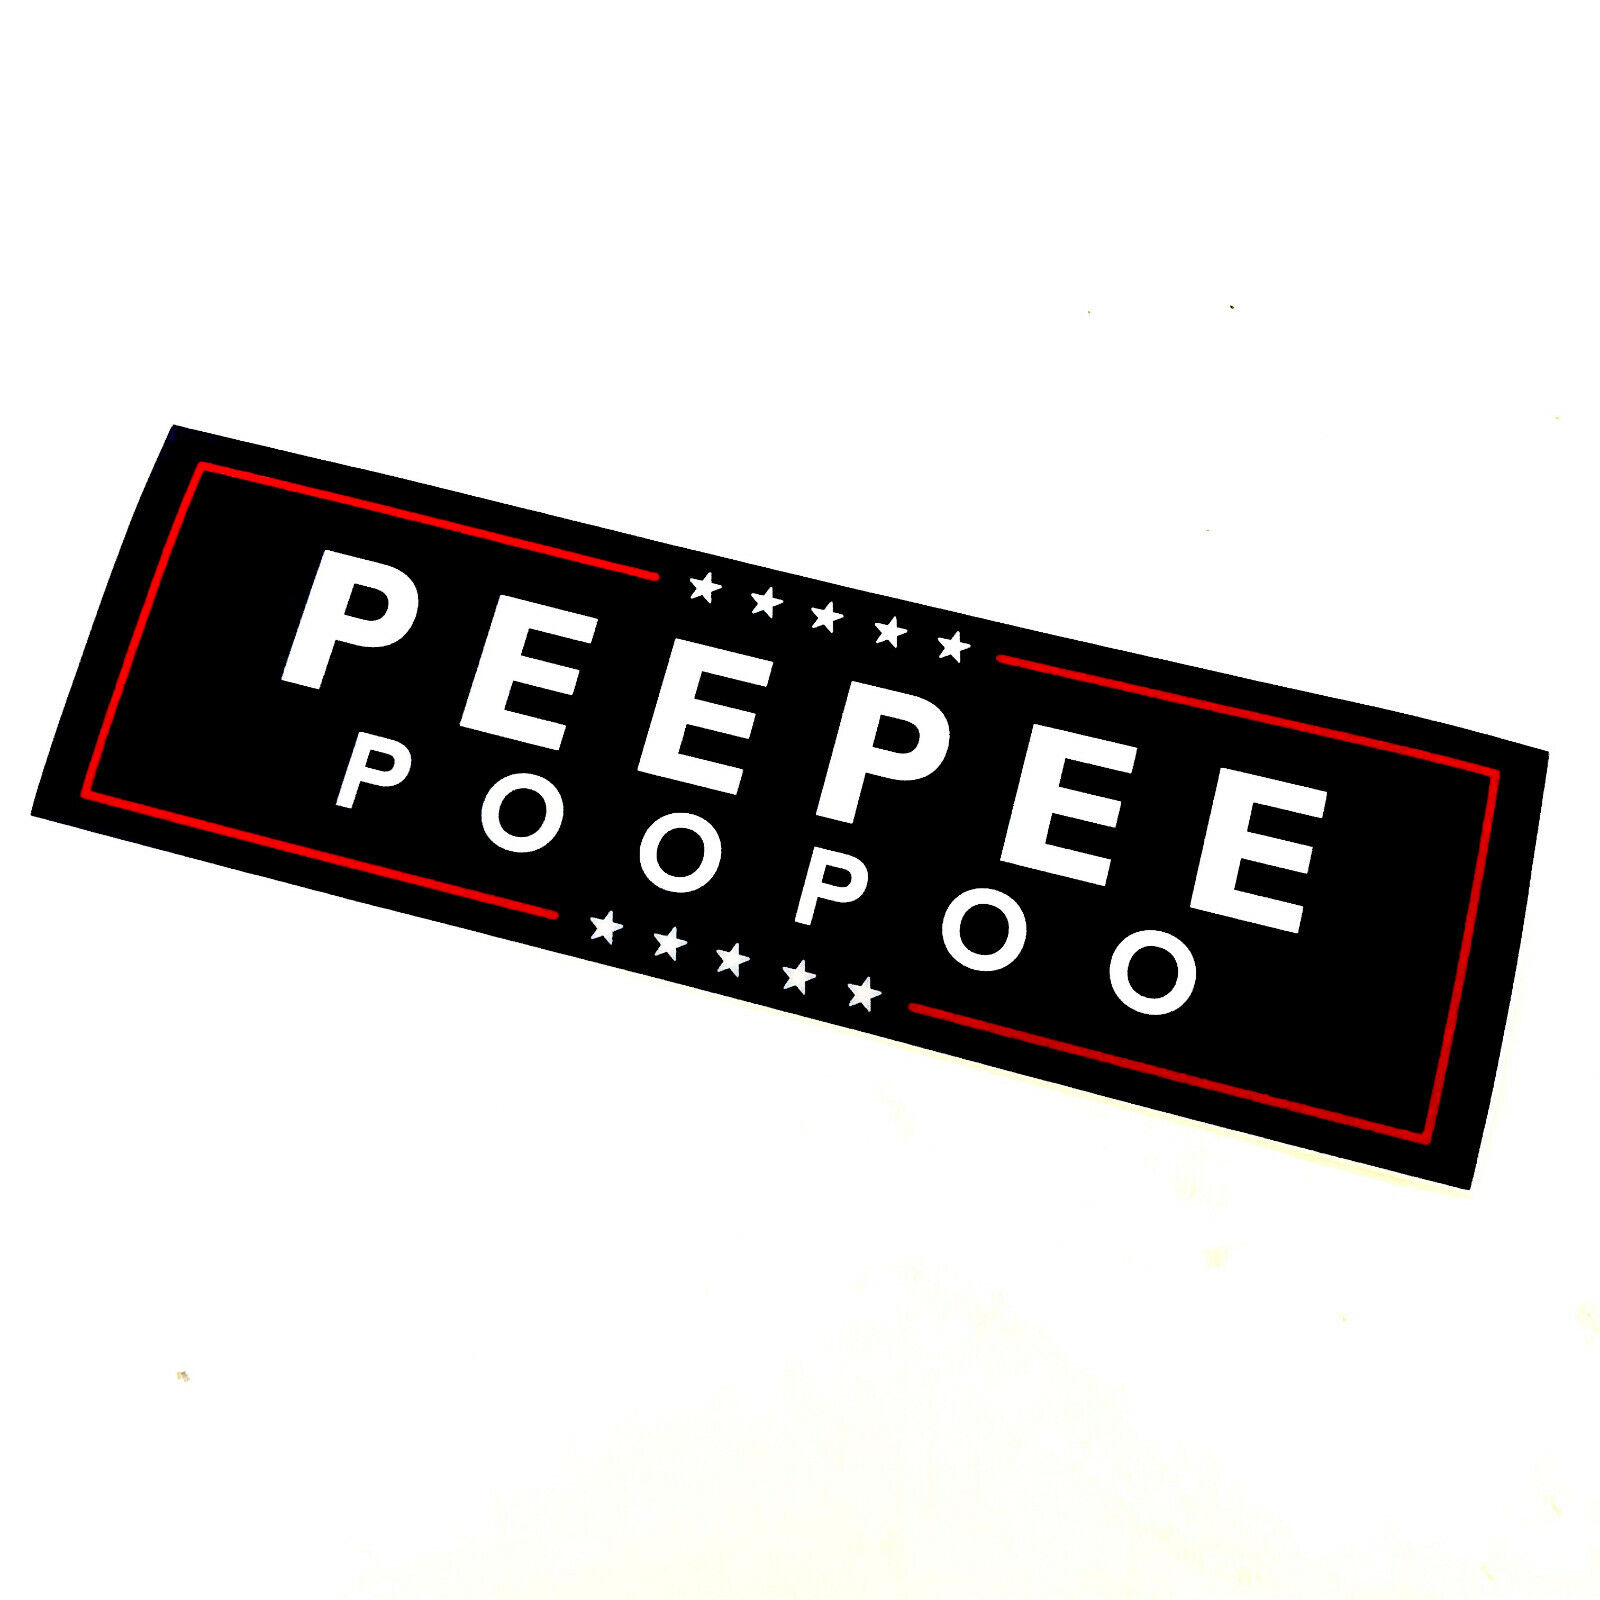 PeePeePooPoo 10 by 3 blue bumper sticker